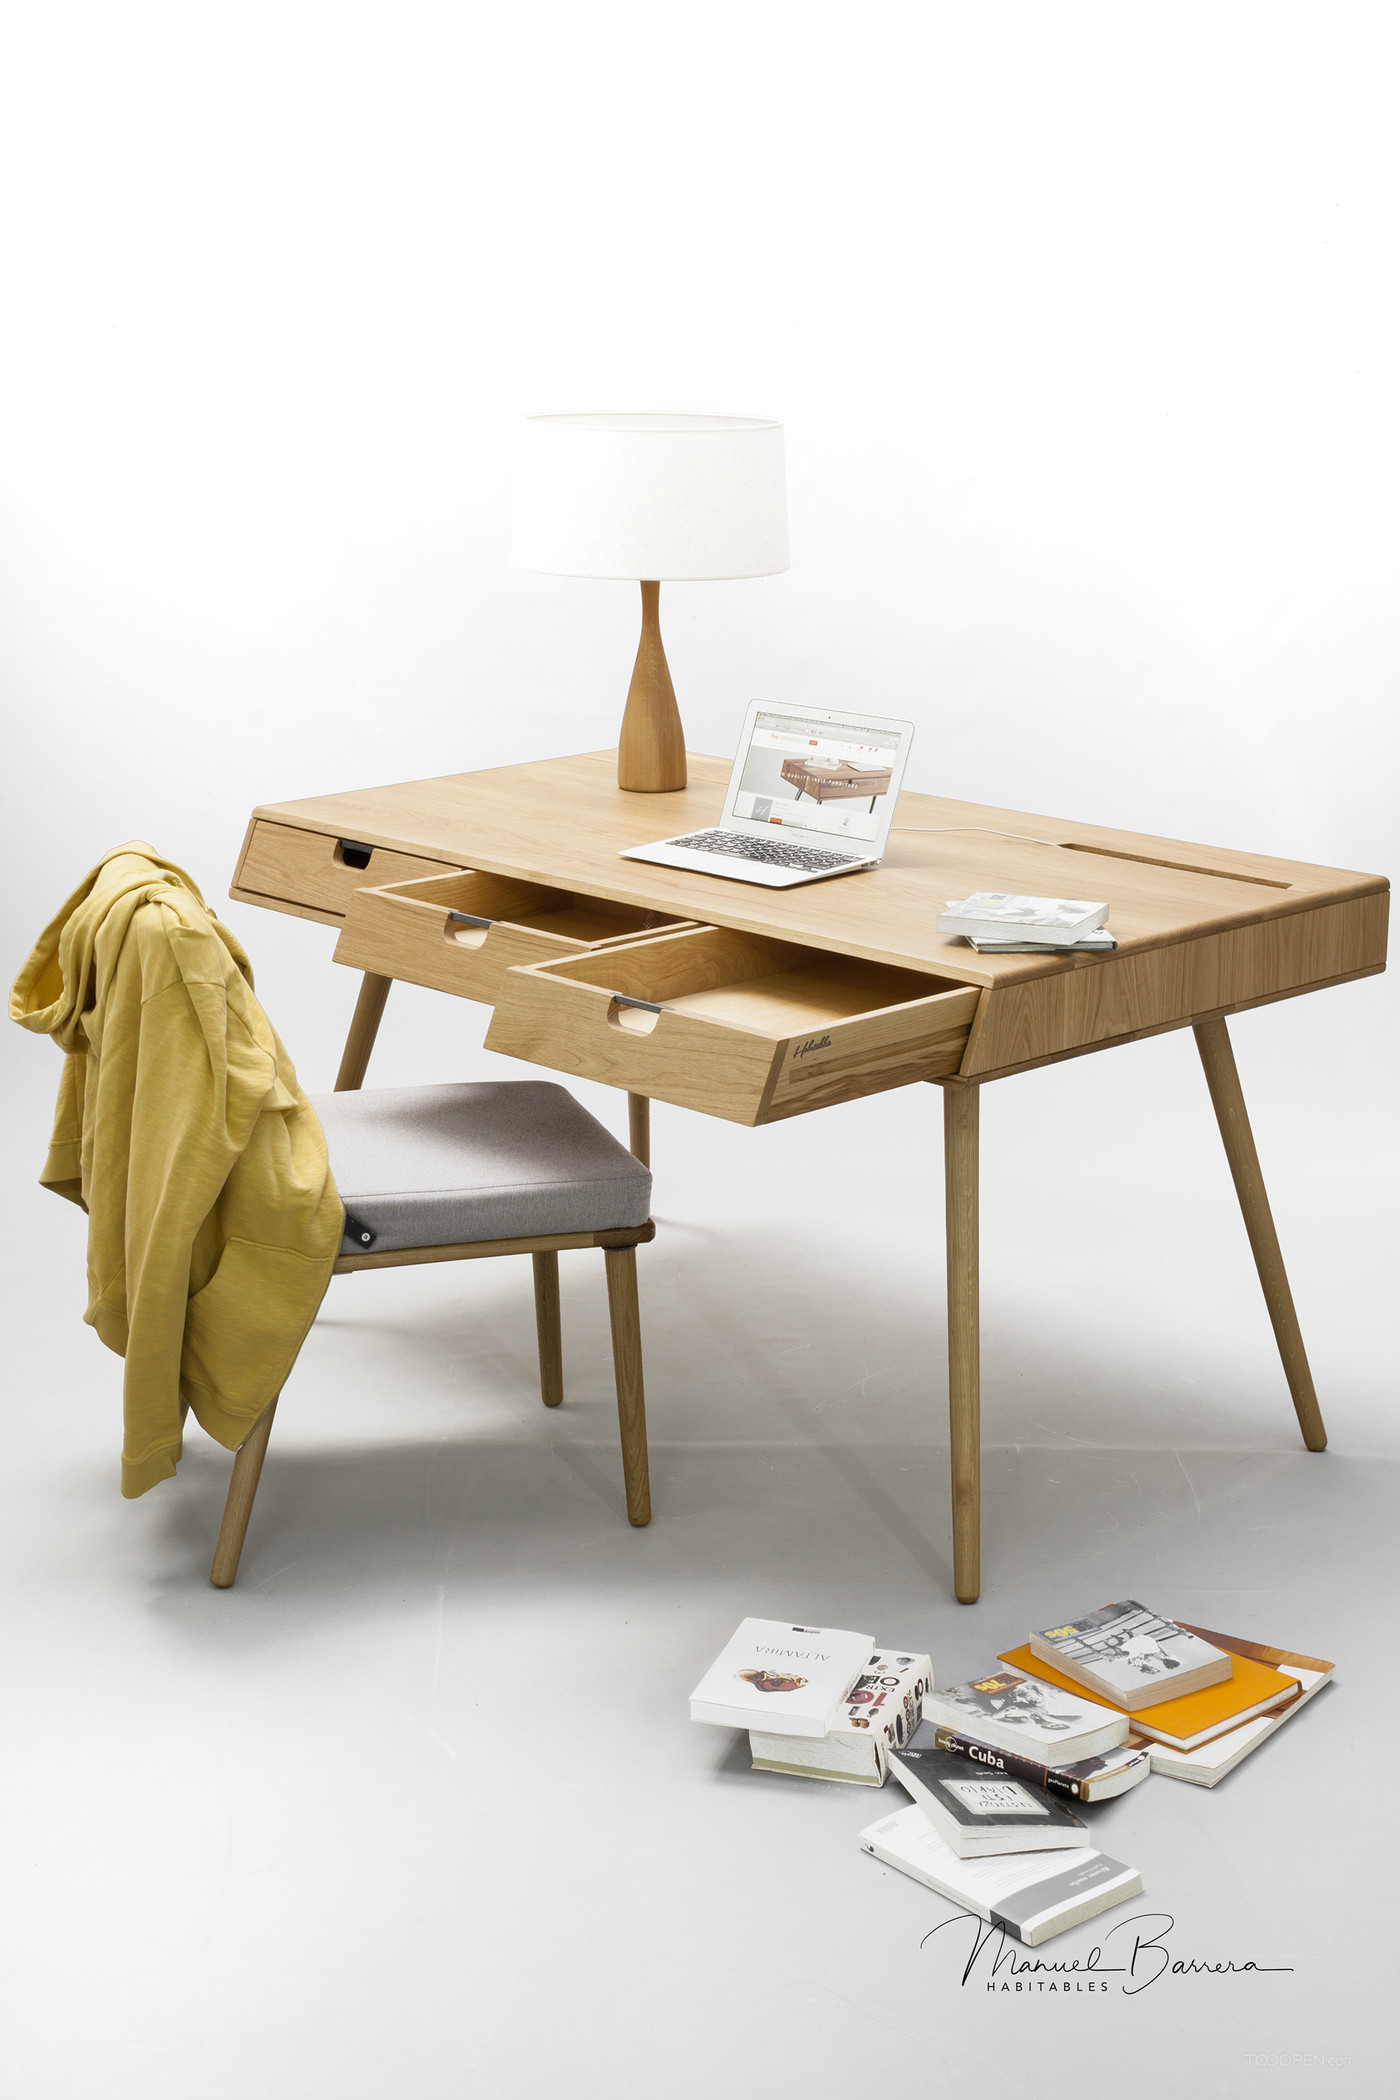 精简办公桌家具产品设计欣赏-02